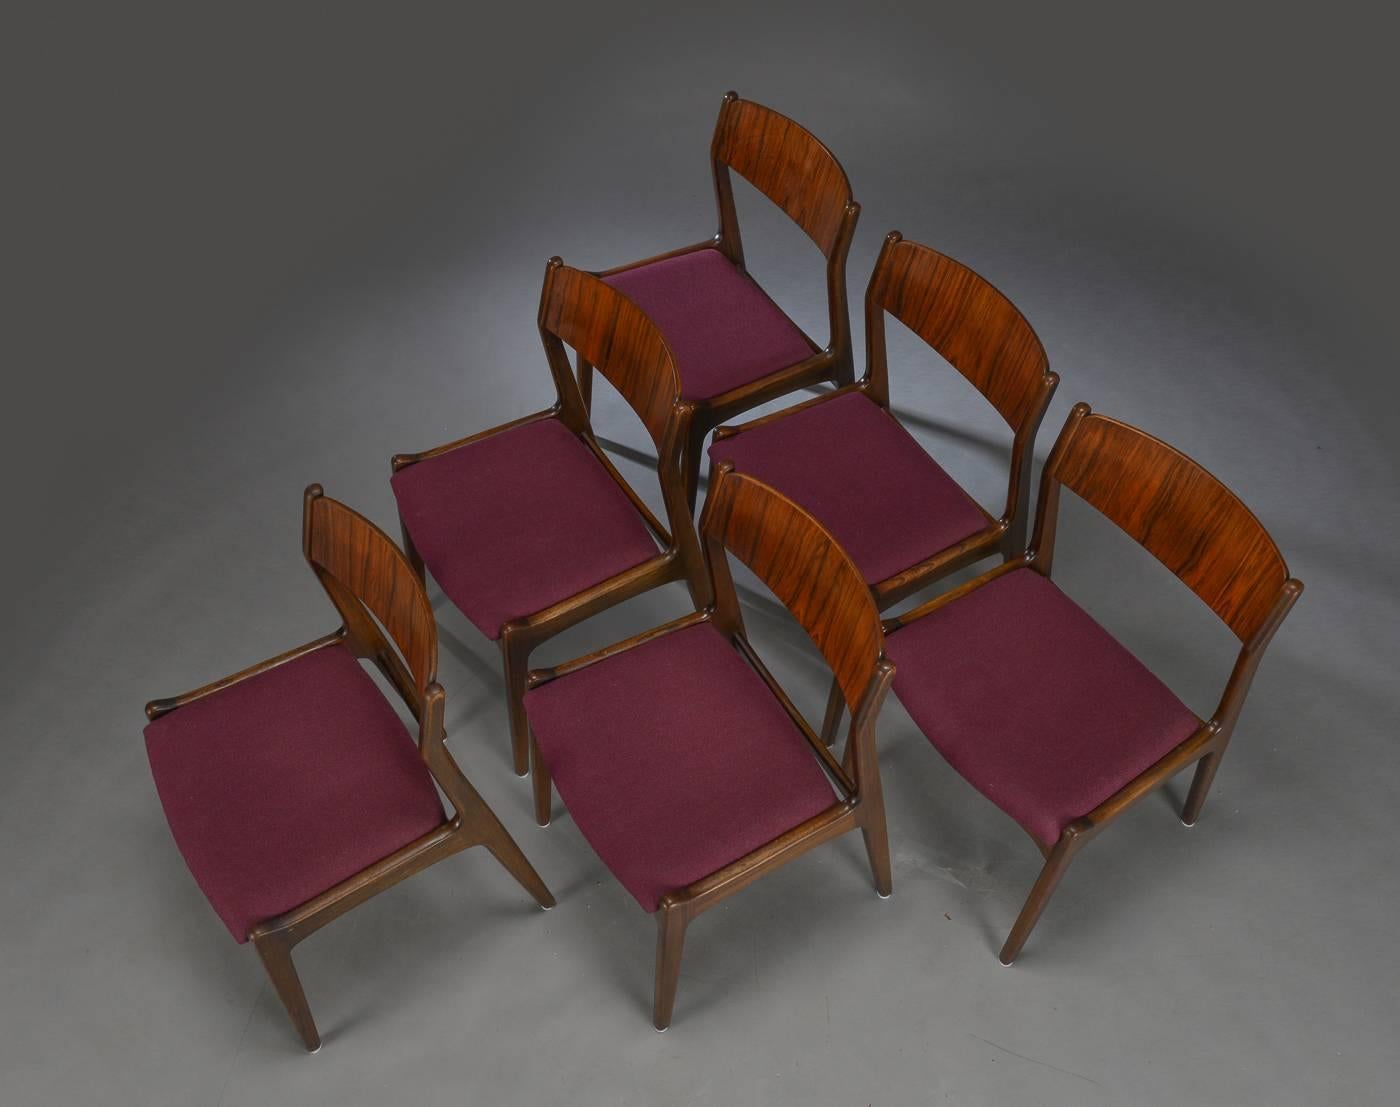 Satz von sechs dänischen Esszimmerstühlen in Hartholzfurnier aus den späten 1960er Jahren, von unbekanntem Designer gepolsterten Sitz. 
Die Stühle sind unrestauriert, Restaurierung und Aufpolsterung auf Anfrage.

Lieferung 2-3 Wochen.